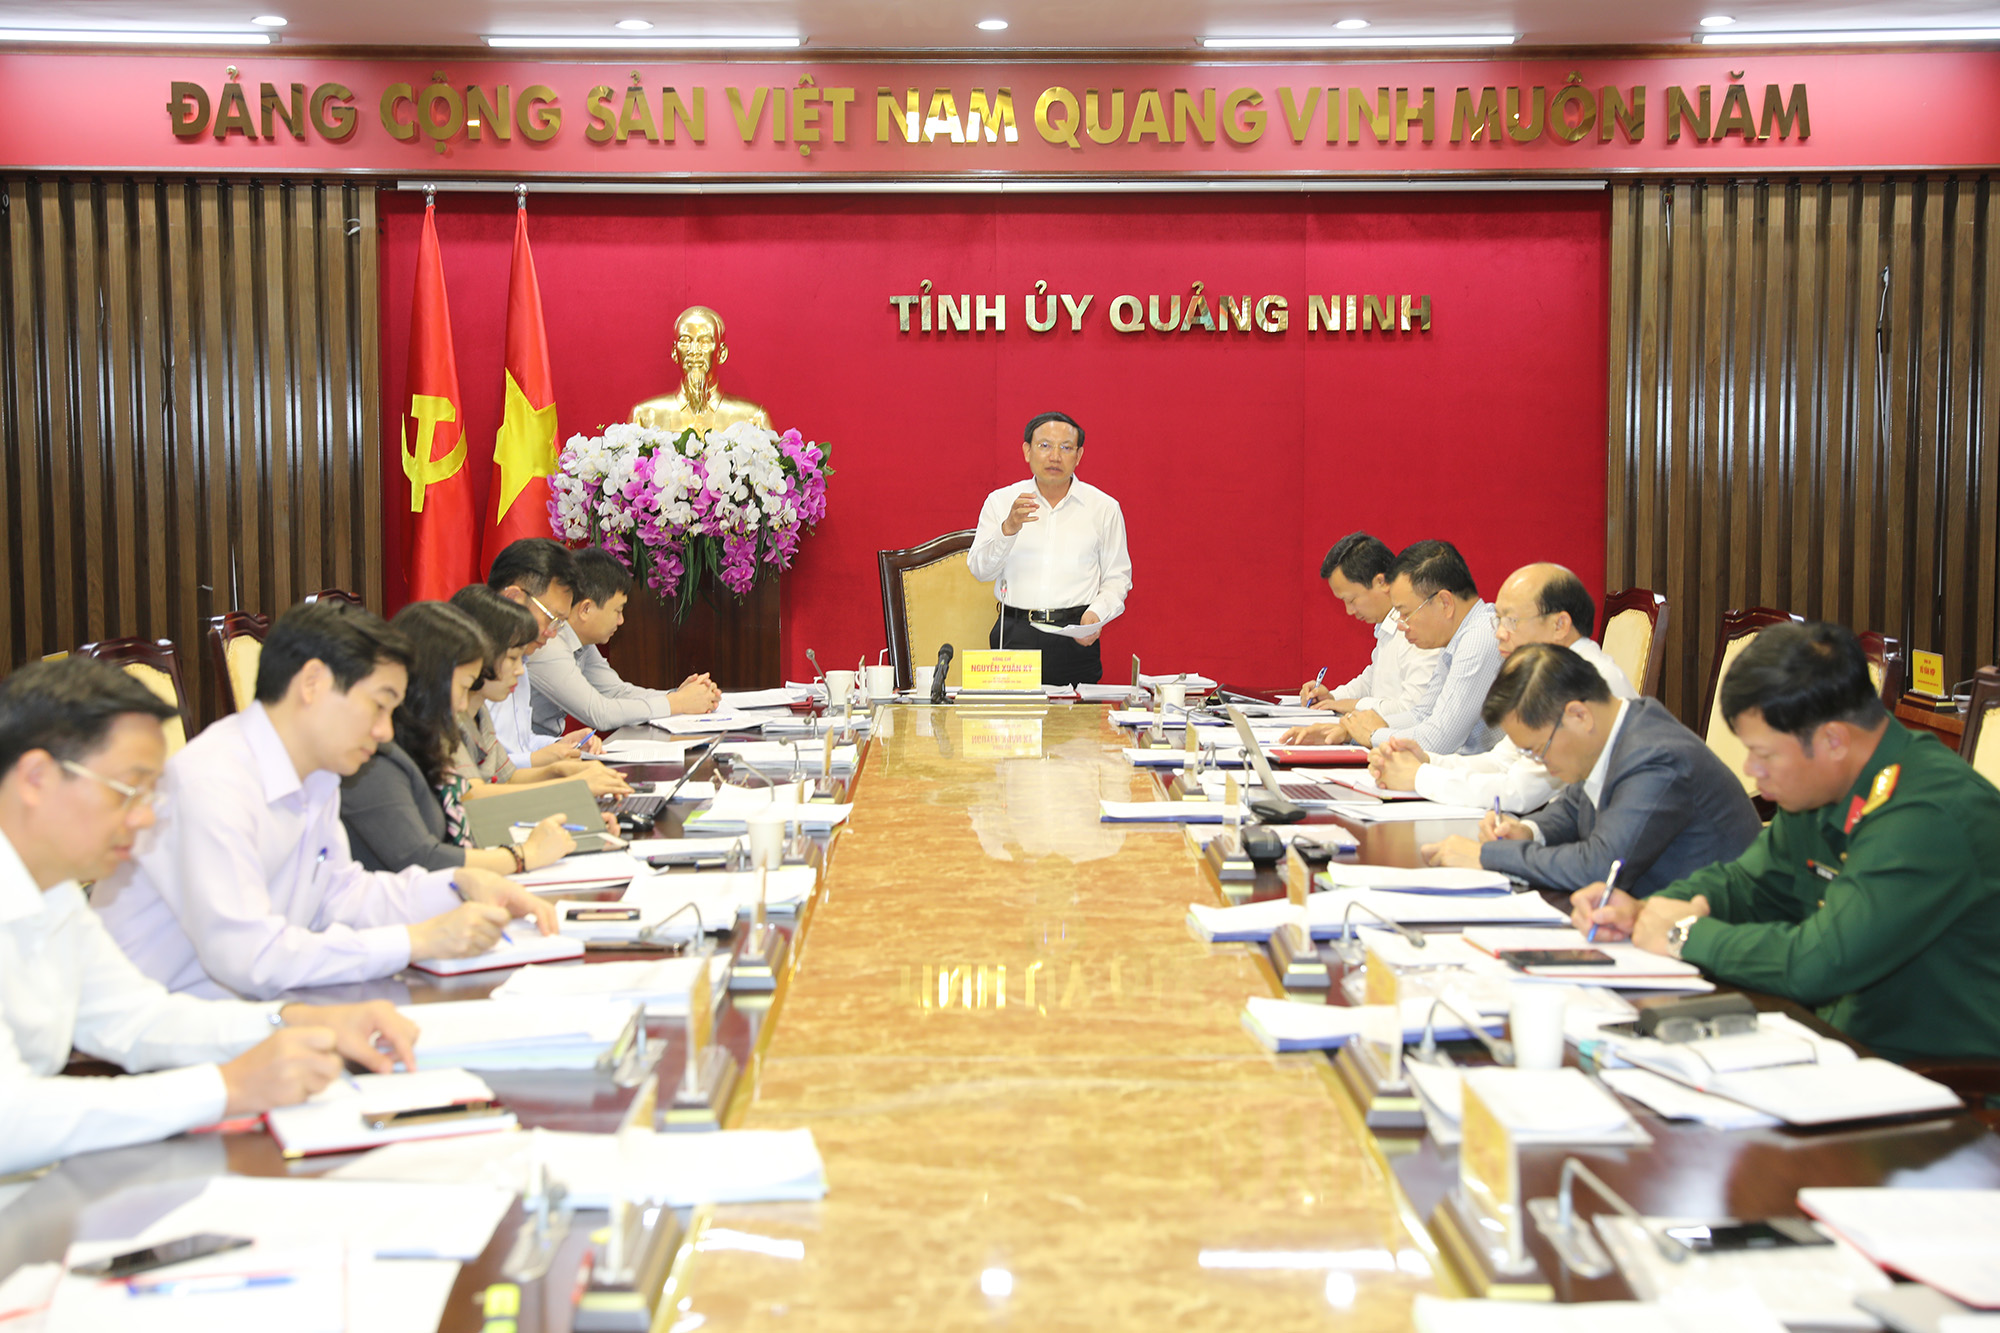 Đồng chí Nguyễn Xuân Ký, Bí thư Tỉnh ủy, Chủ tịch HĐND tỉnh chủ trì hội nghị